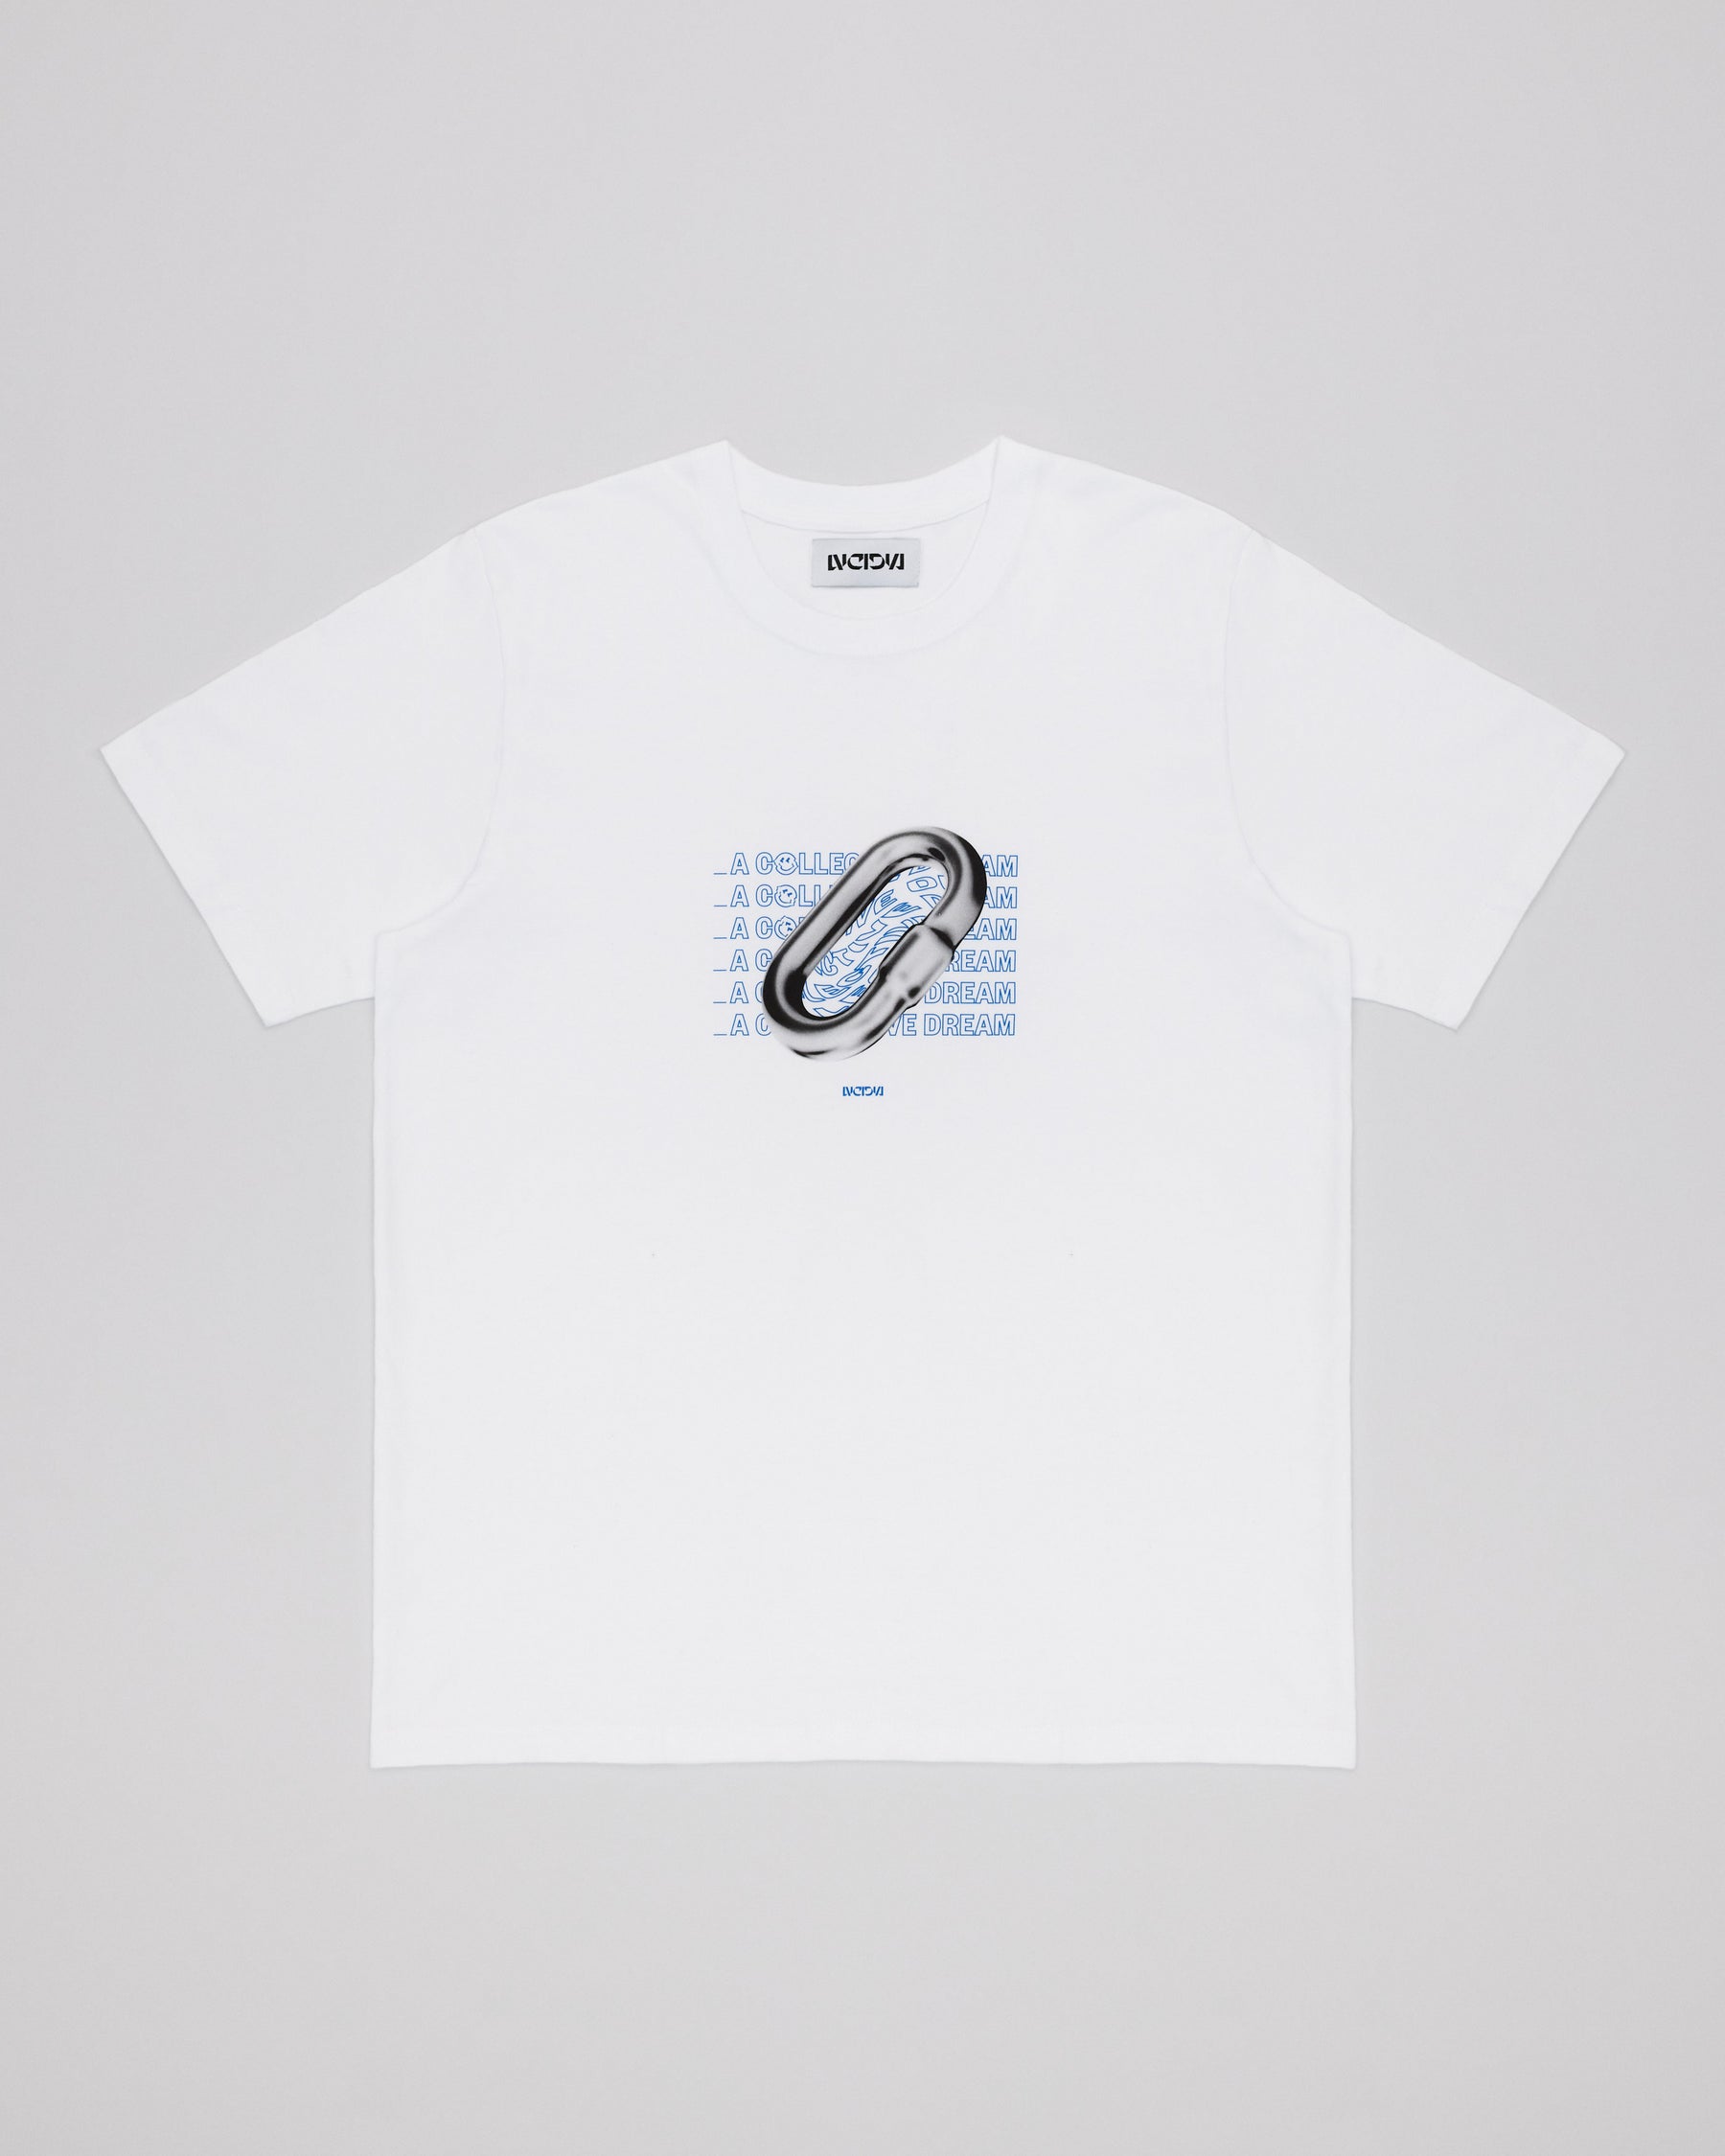 Chainlink T-Shirt